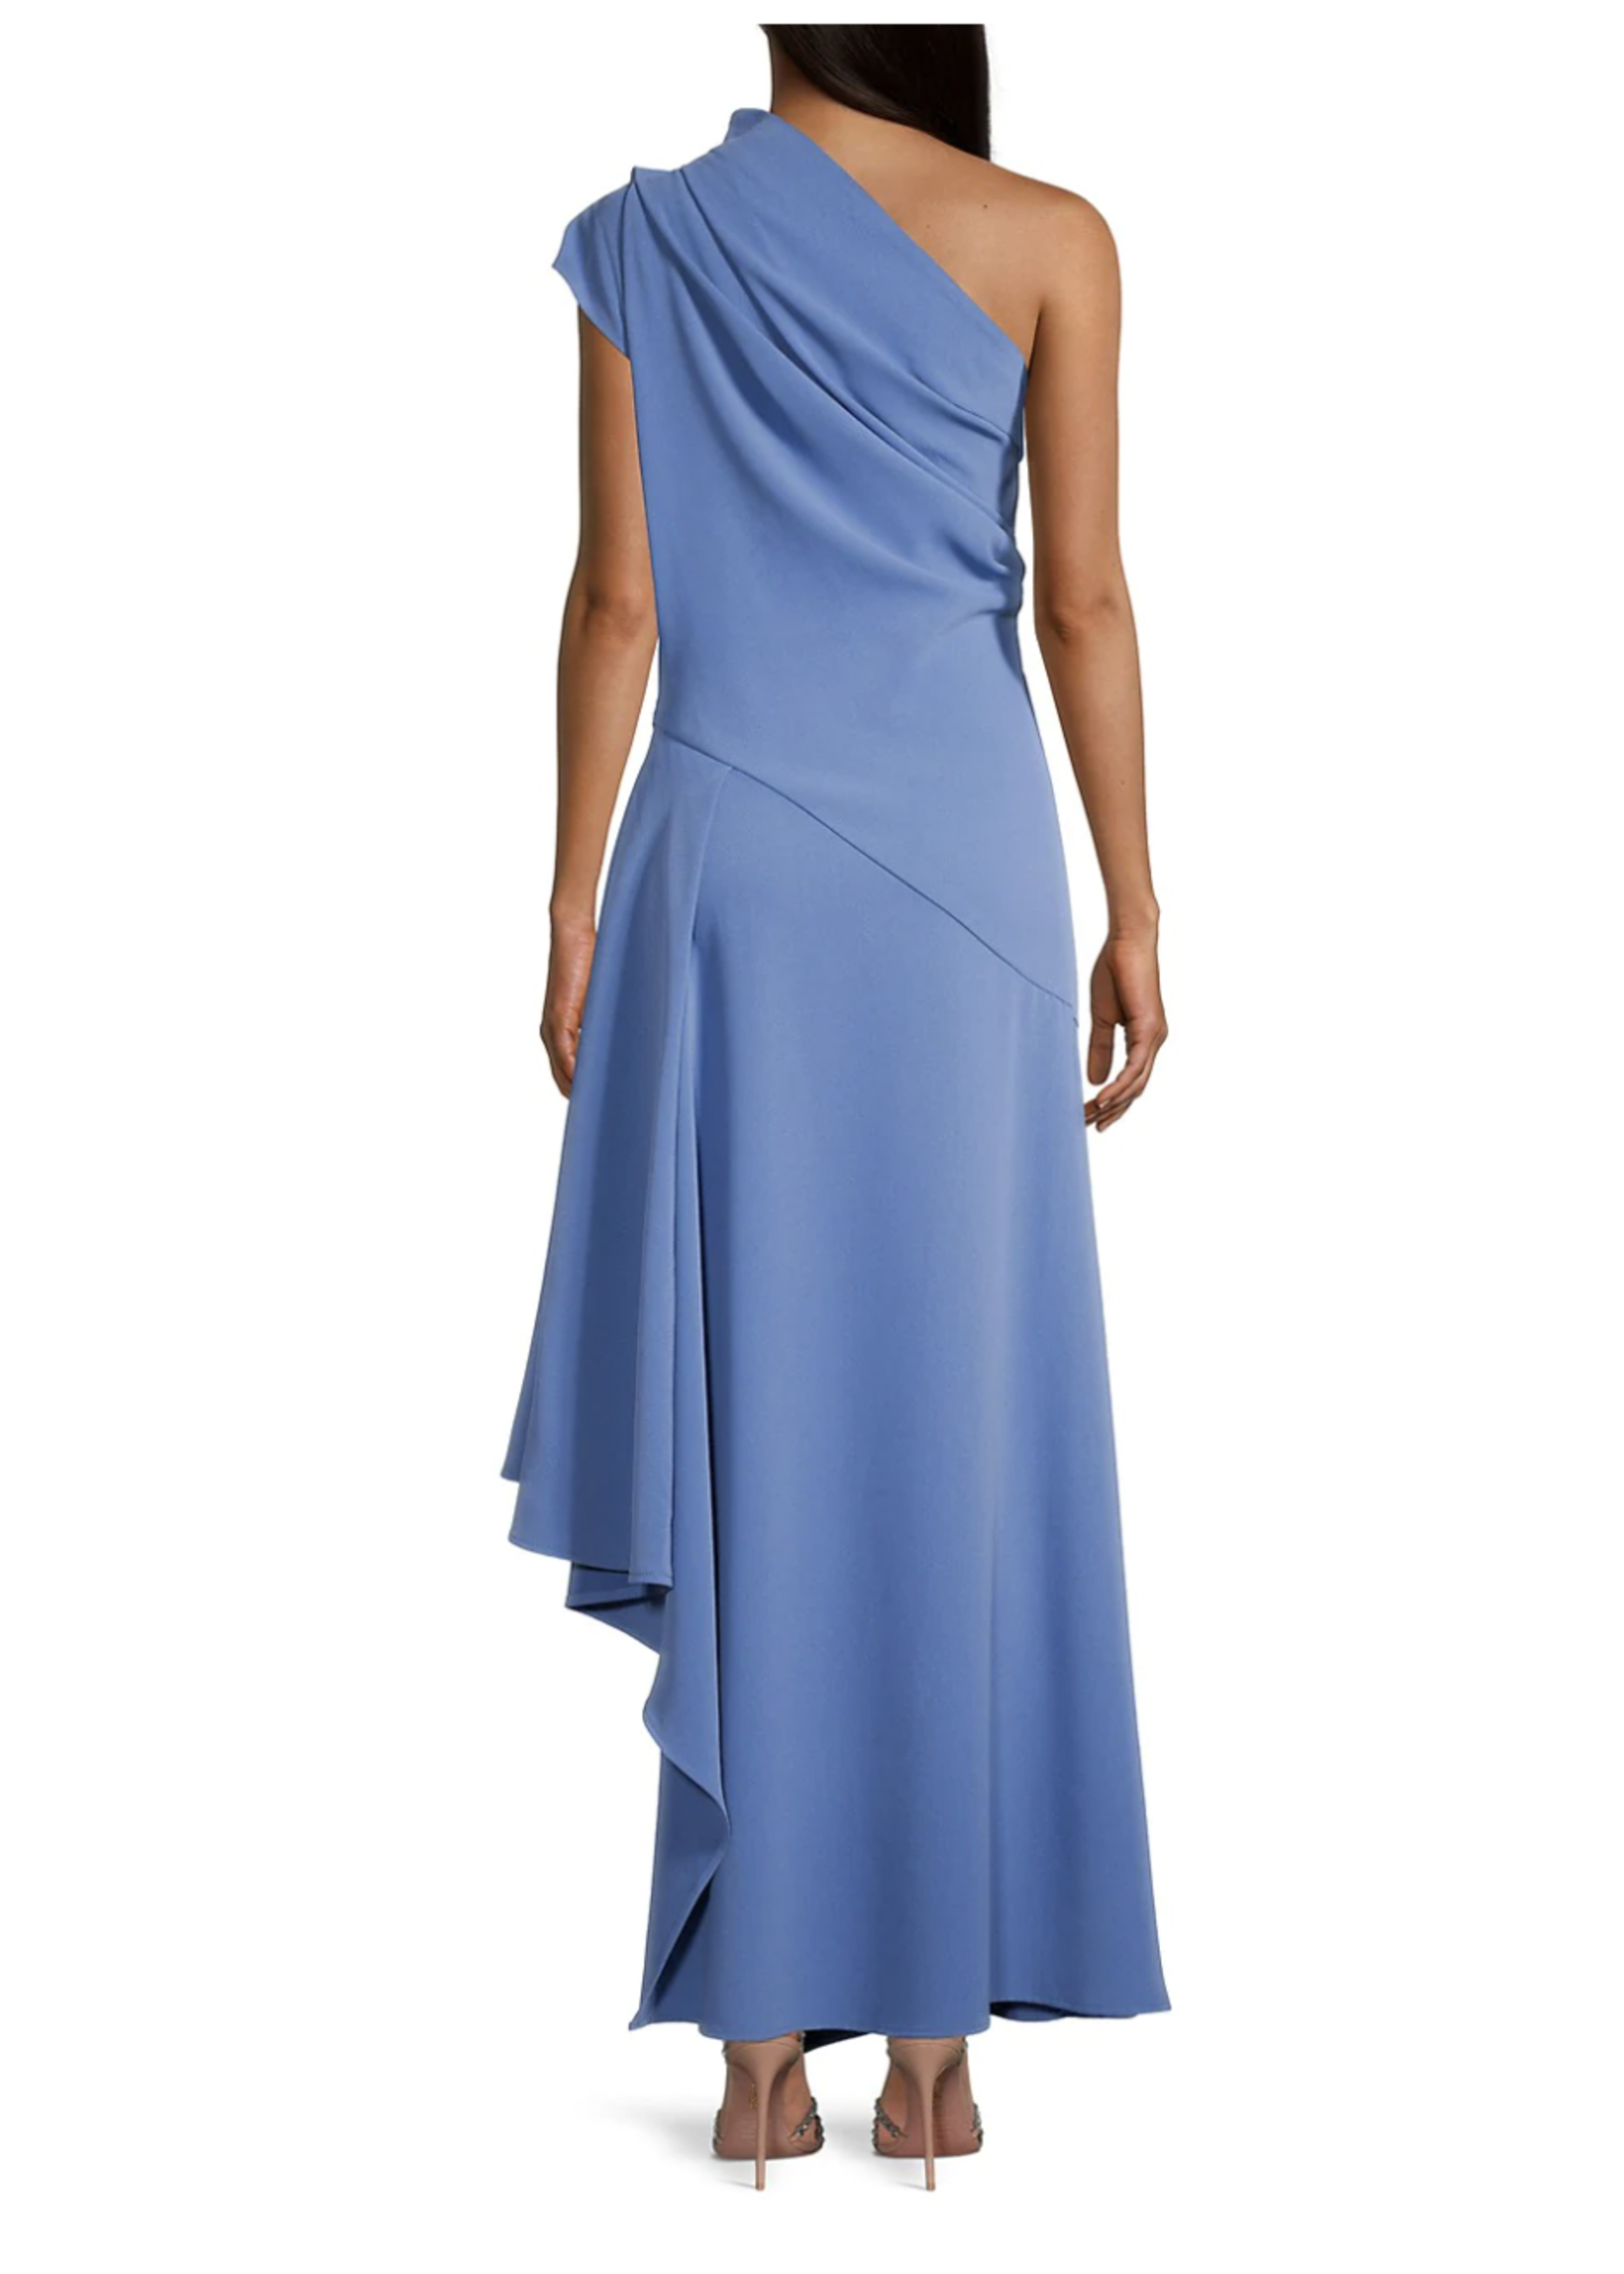 Elitaire Boutique Petria Dress is Blue